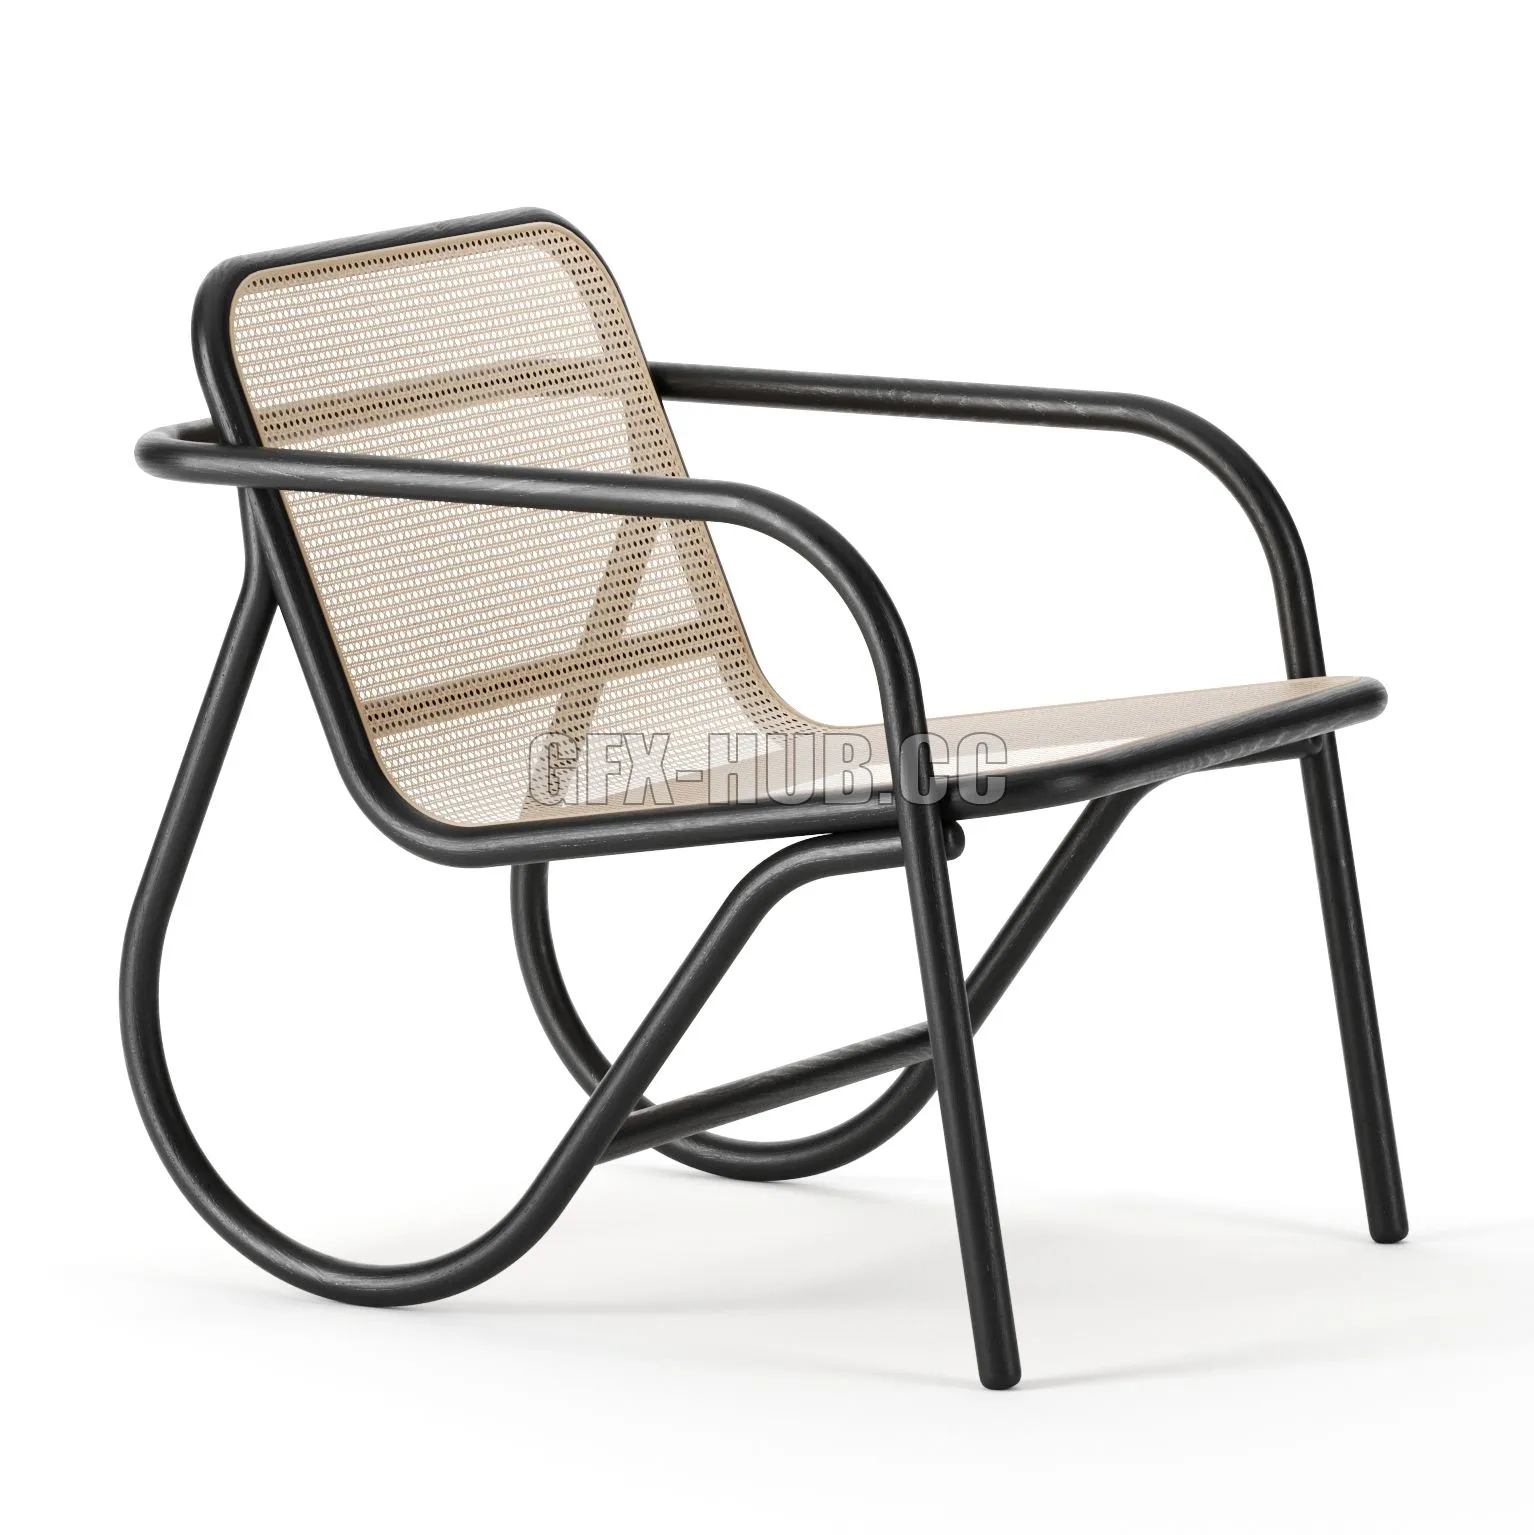 CAR – N 200 Chair by GTV Design 3D Model